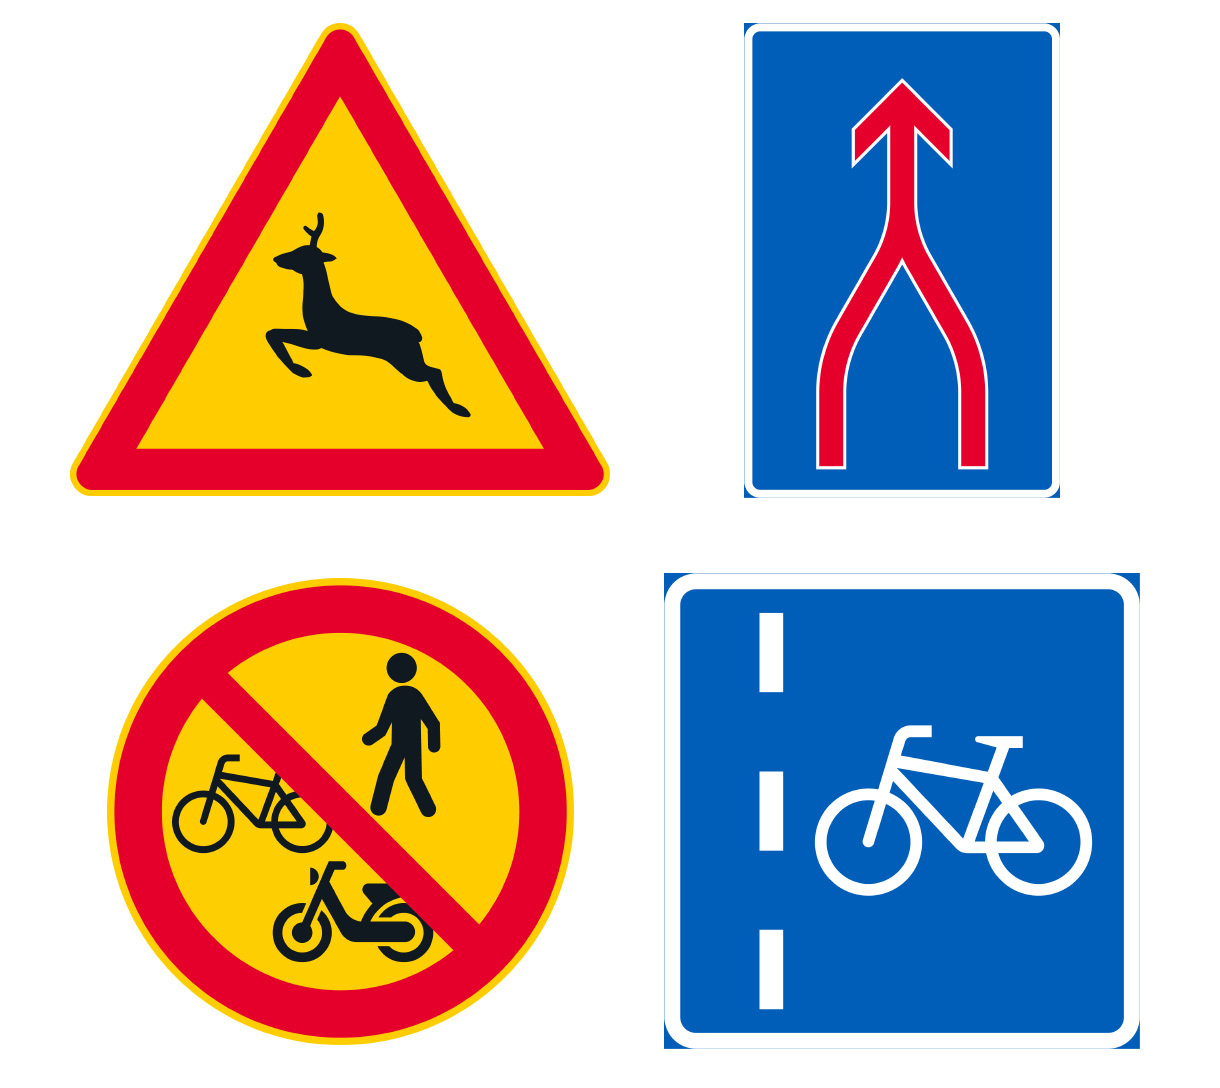 Пешеходы лишатся пола, косули попадут в треугольники. В Финляндии появятся  50 новых дорожных знаков - 20 февраля 2020 - Фонтанка.Ру